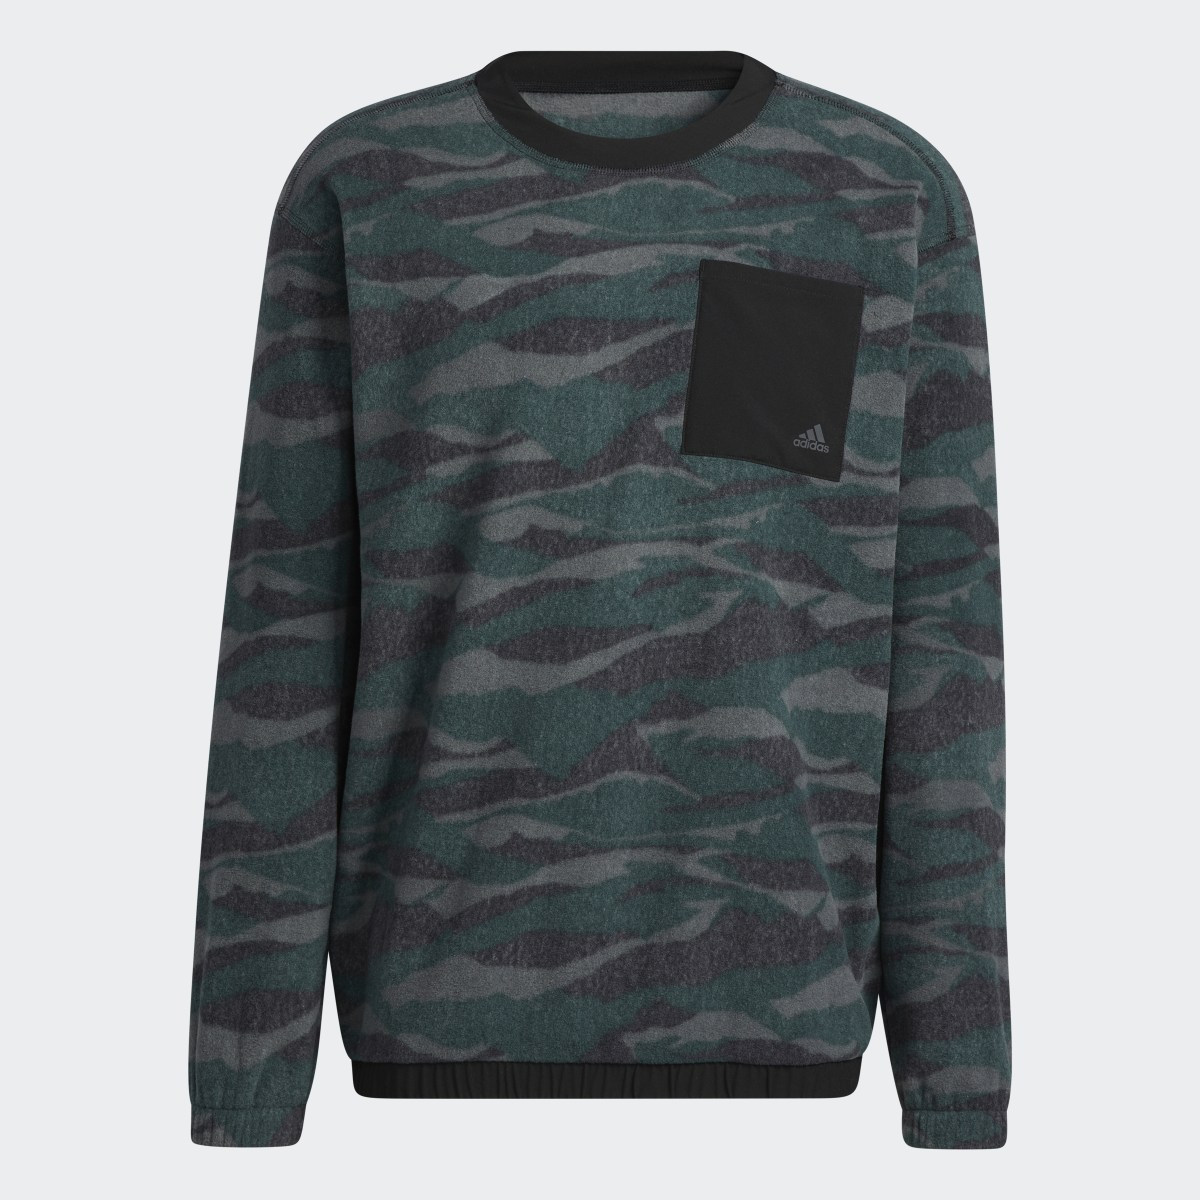 Adidas Sweat-shirt Texture-Print. 5